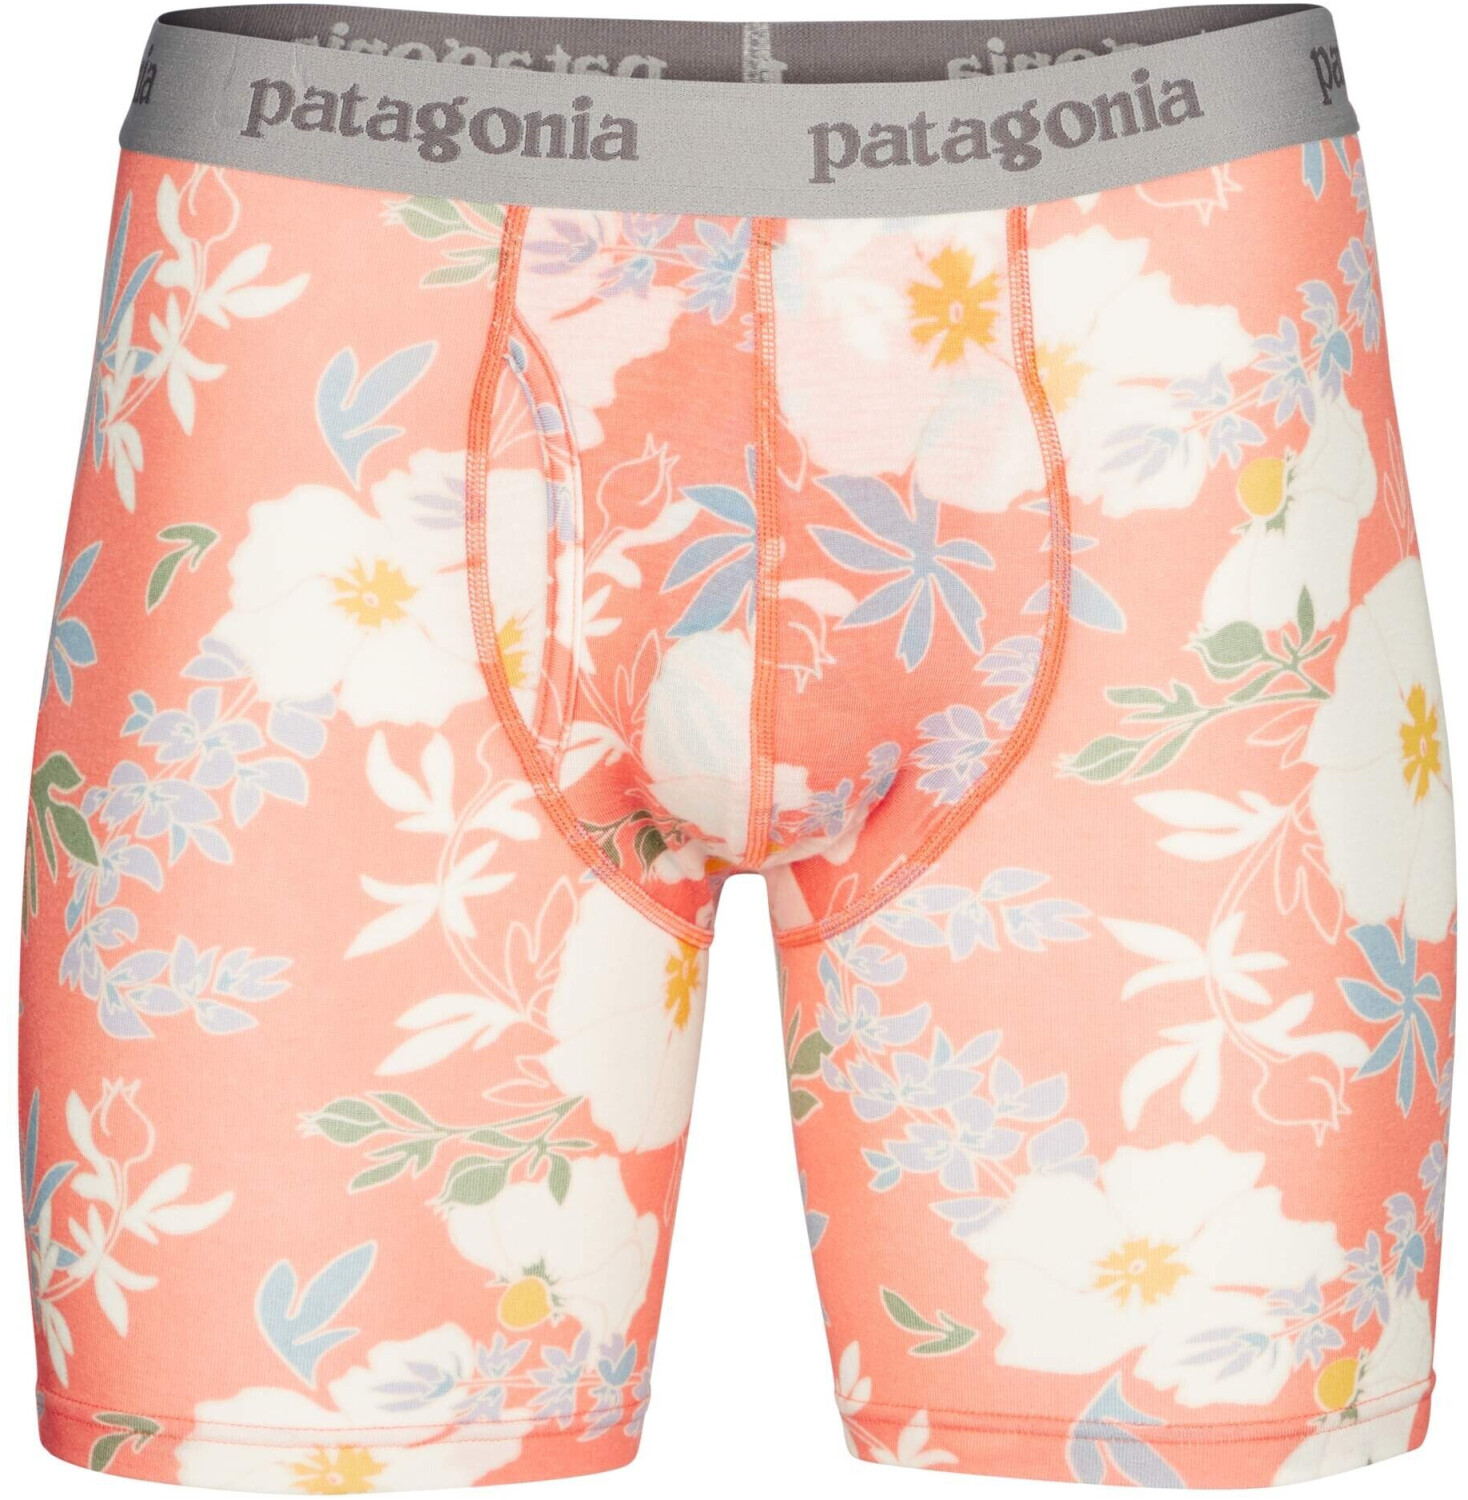 Patagonia Essential Boxer Briefs - 6 in. - Underwear - Men's